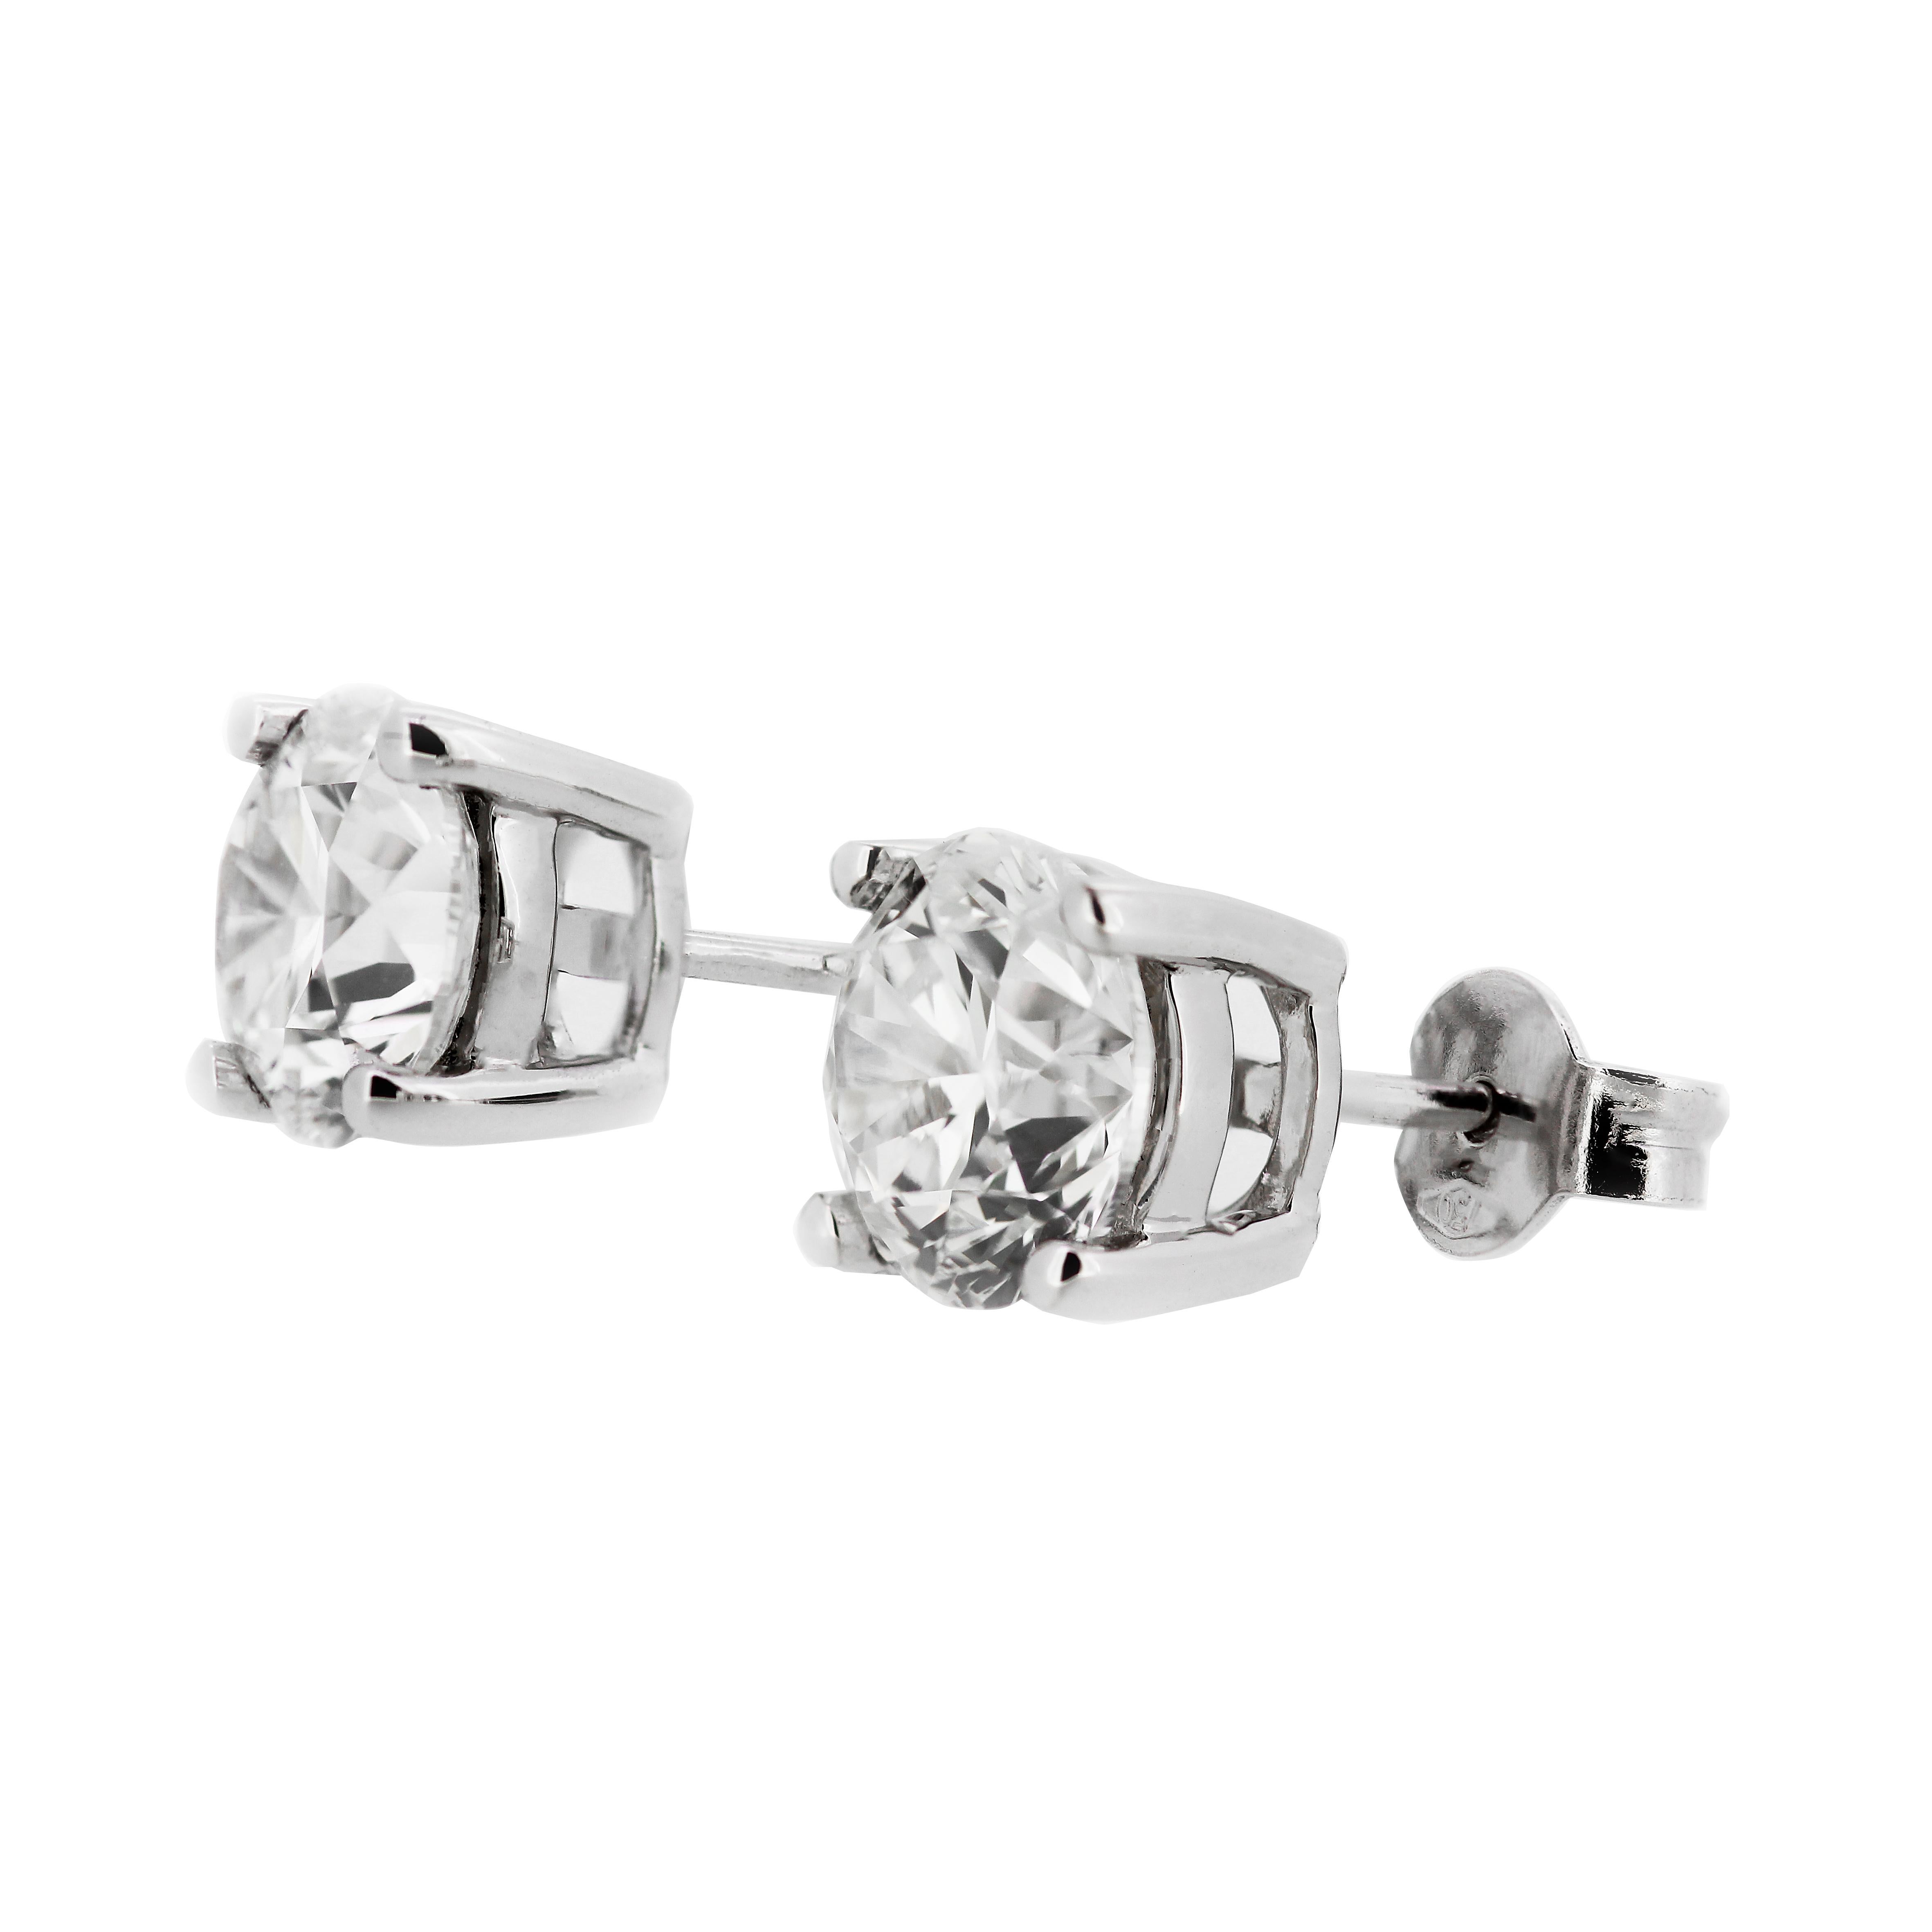 Ein funkelndes Paar Solitär-Diamant-Ohrstecker, die sorgfältig auf Größe, Farbe und Reinheit abgestimmt sind. Diese außergewöhnlichen, GIA-zertifizierten Diamantohrstecker verleihen Ihren Ohren ein neues Maß an Eleganz. Jeder Ohrstecker ist mit 2